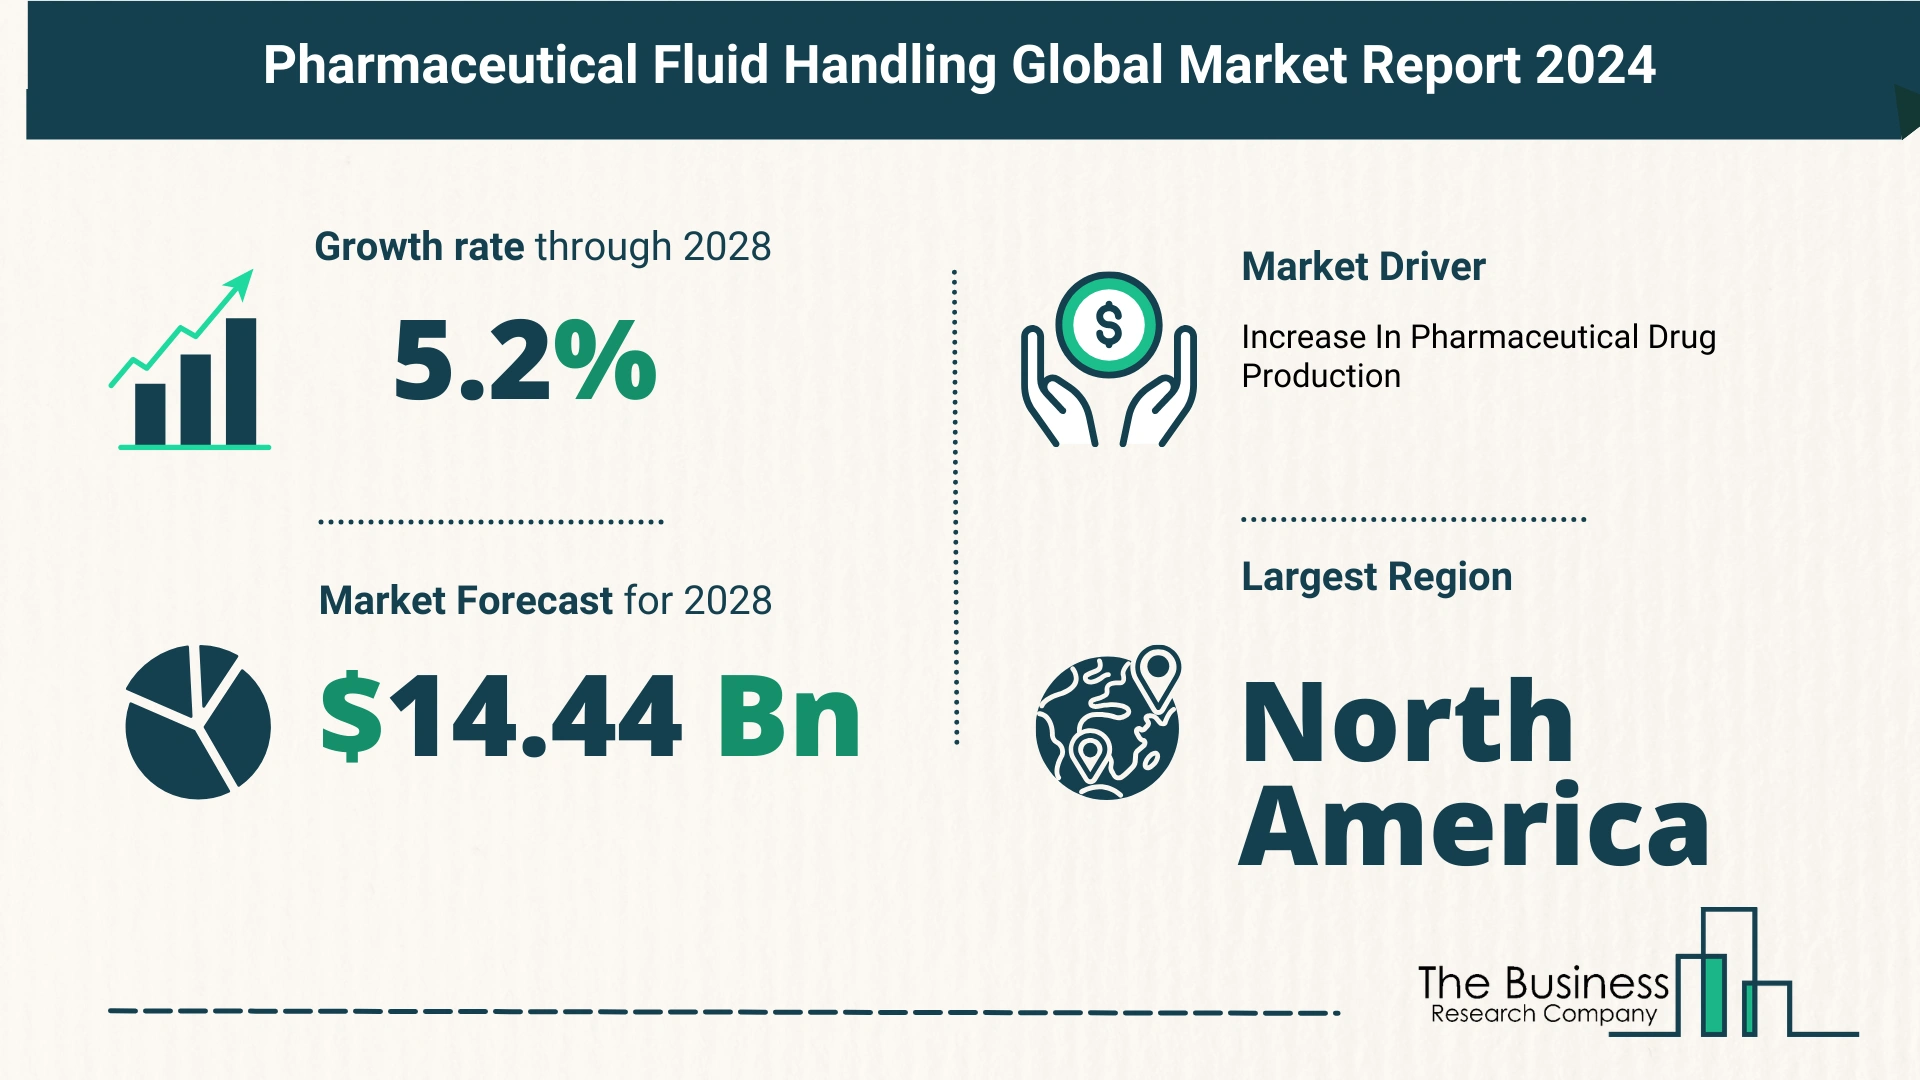 Global Pharmaceutical Fluid Handling Market Size